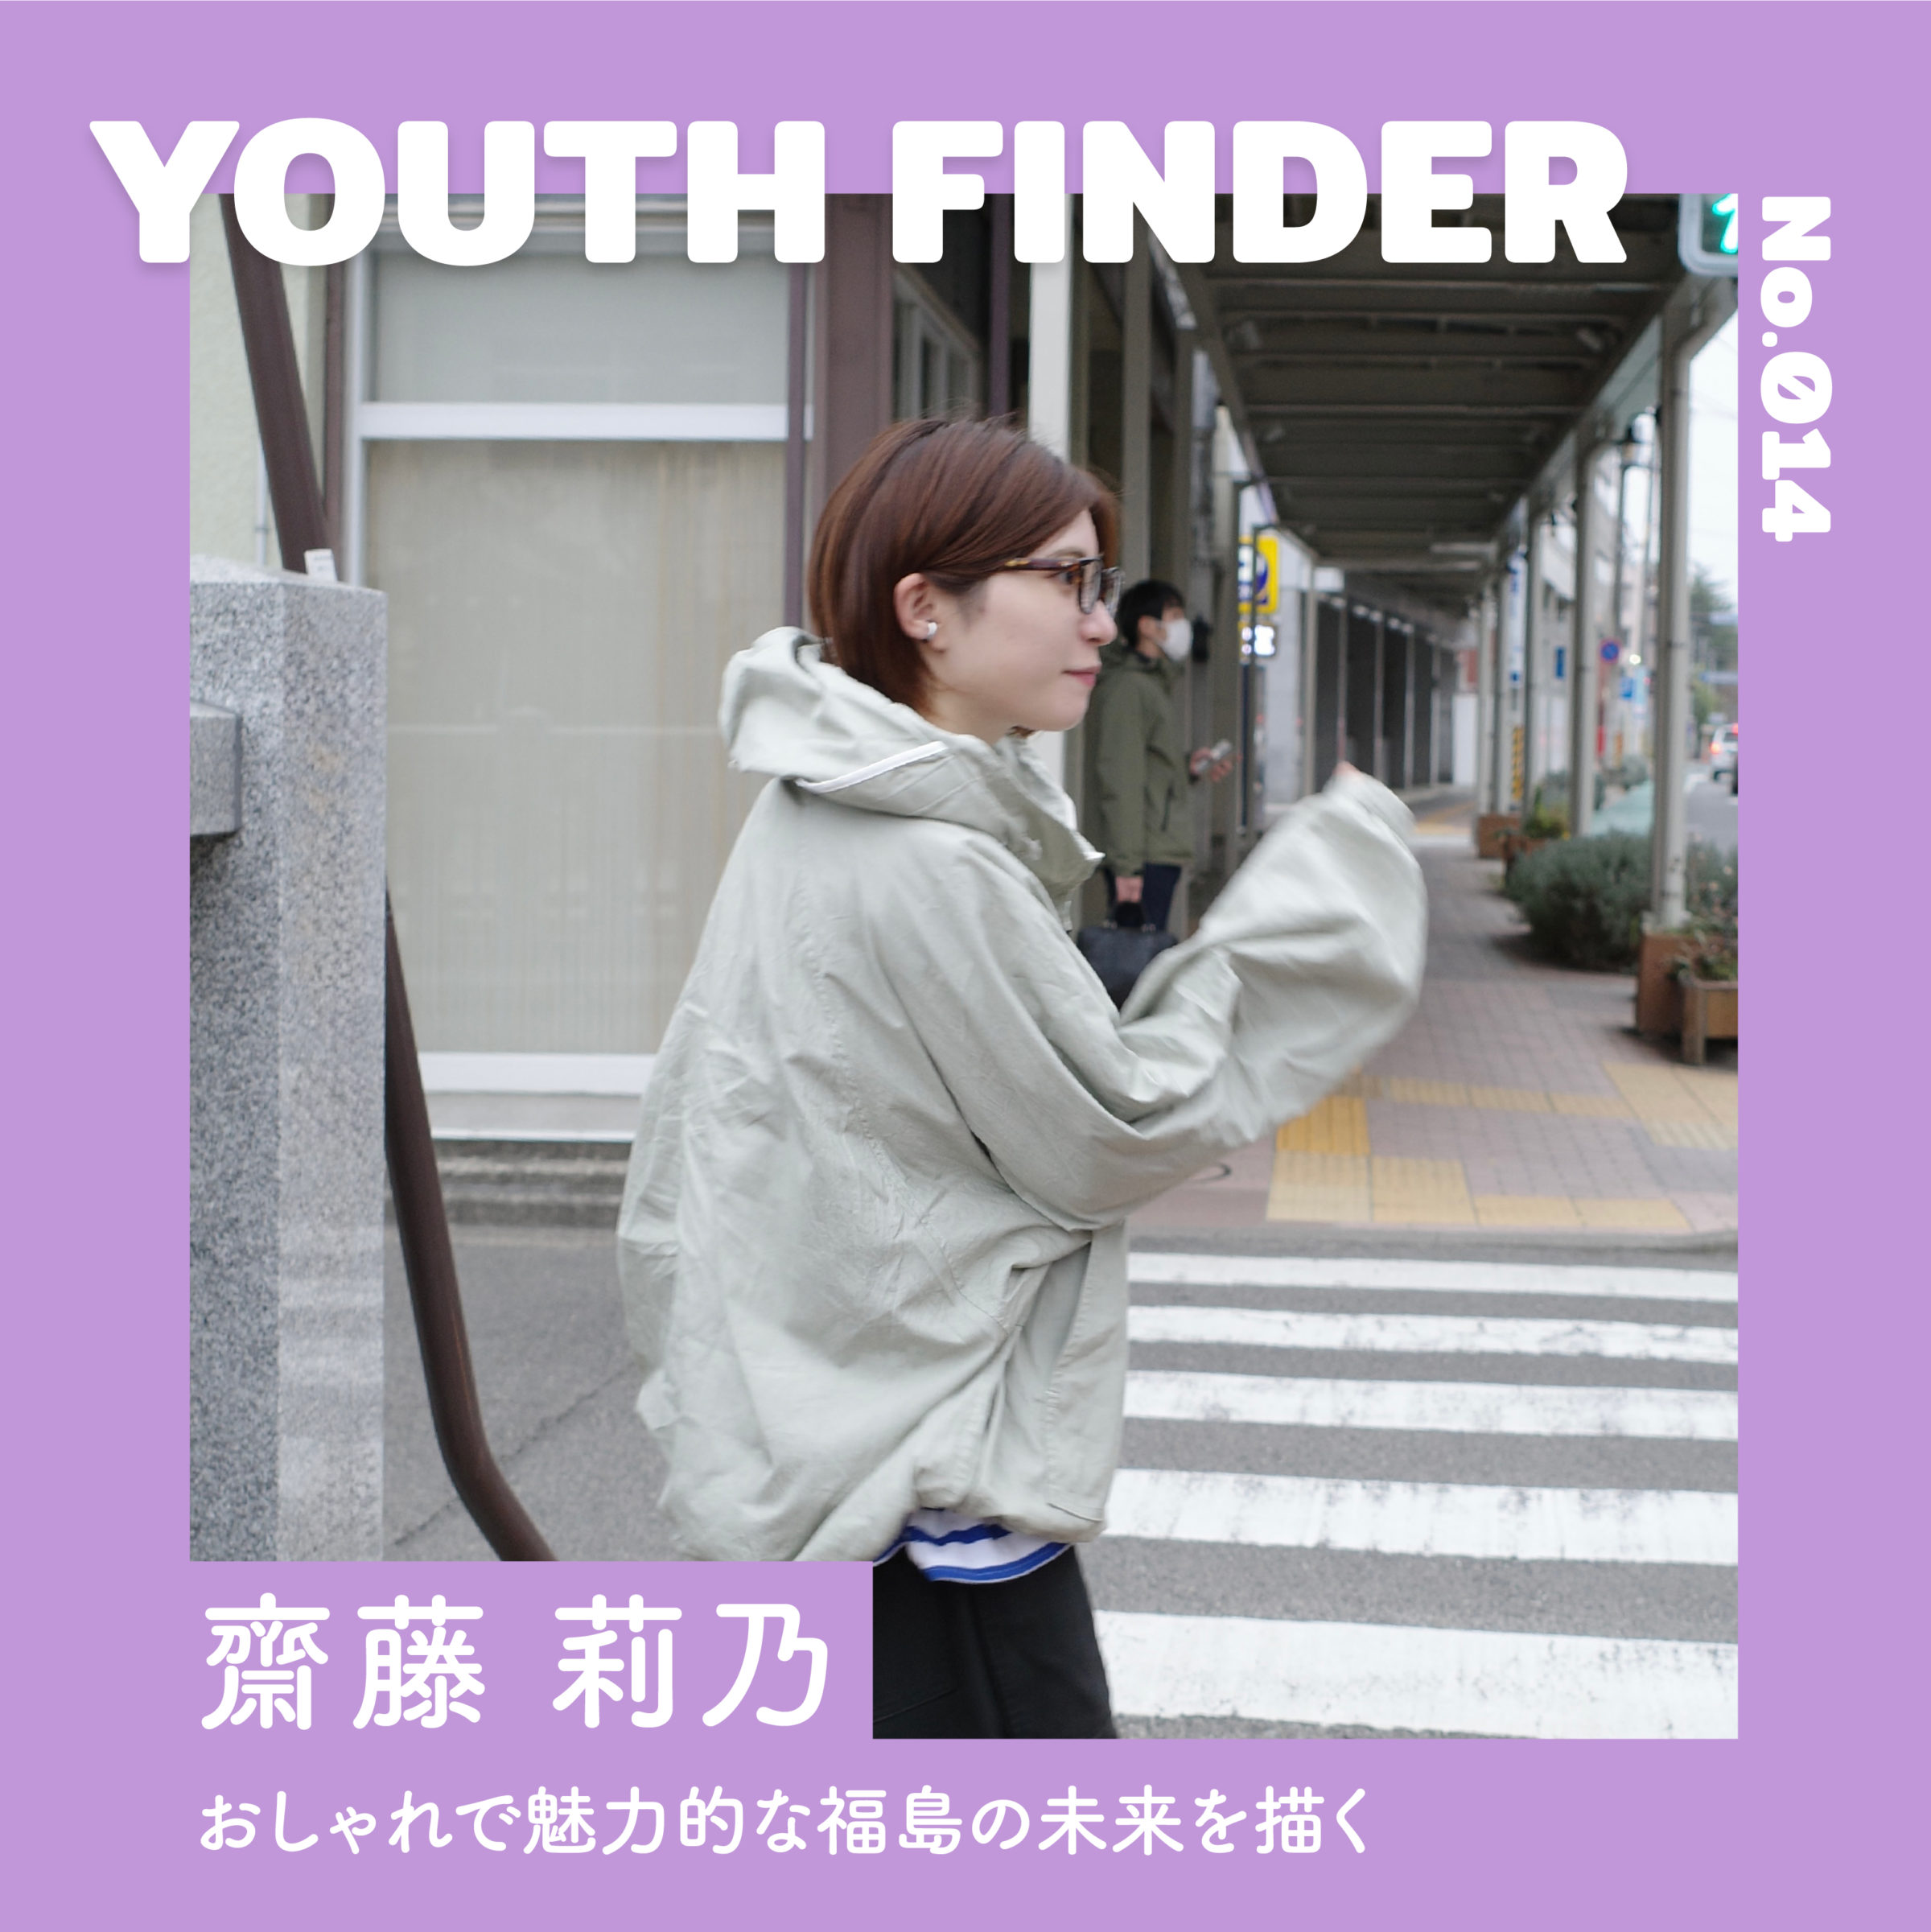 フリーマーケット｢germer｣を通じ、おしゃれで魅力的な福島の未来を描く 齋藤莉乃さん【Youth Finder】の画像